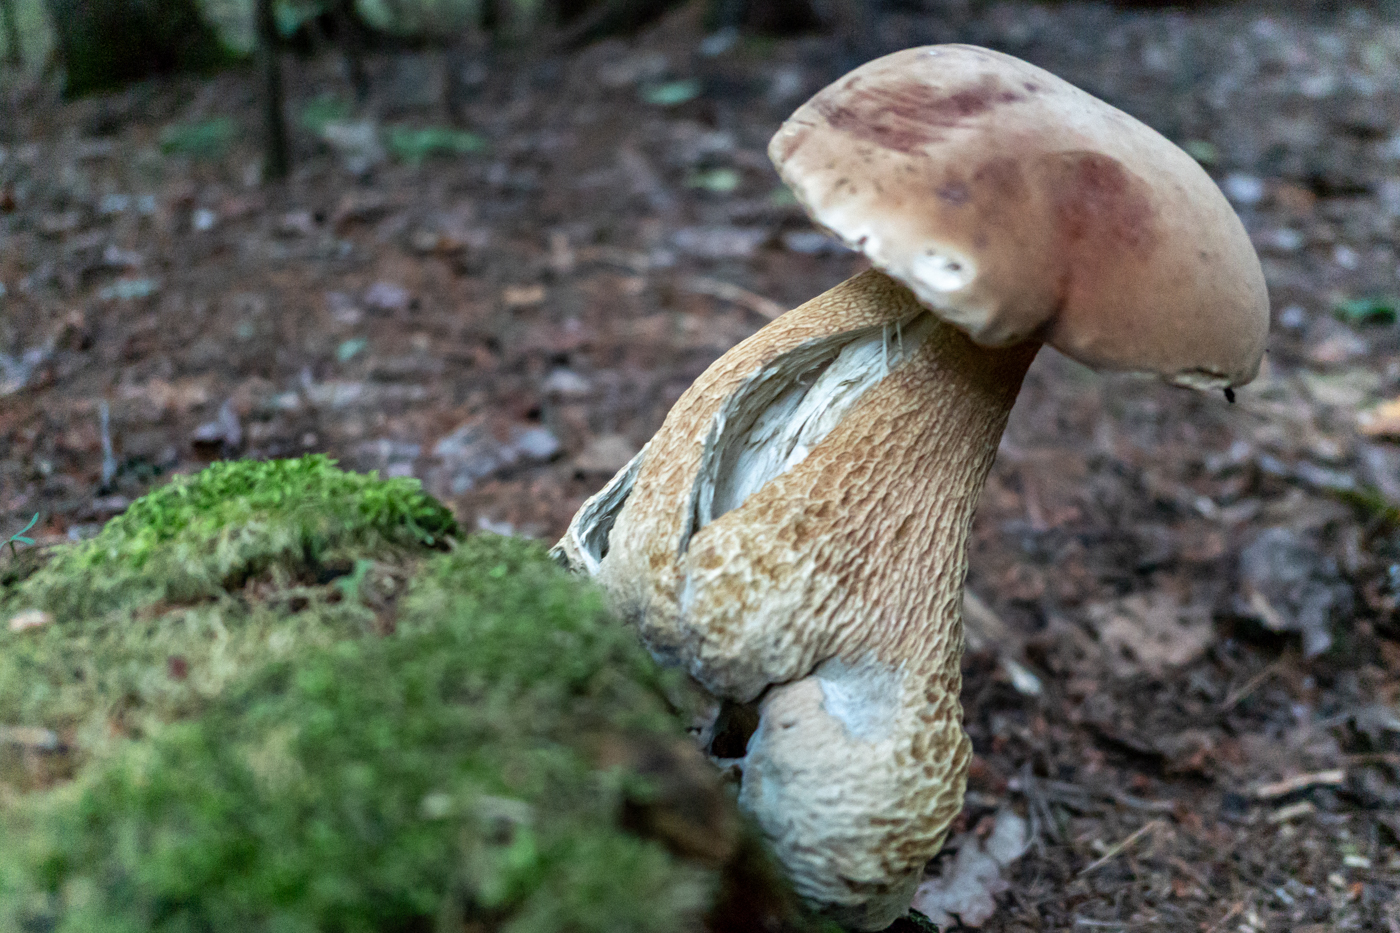 mushroom II, me